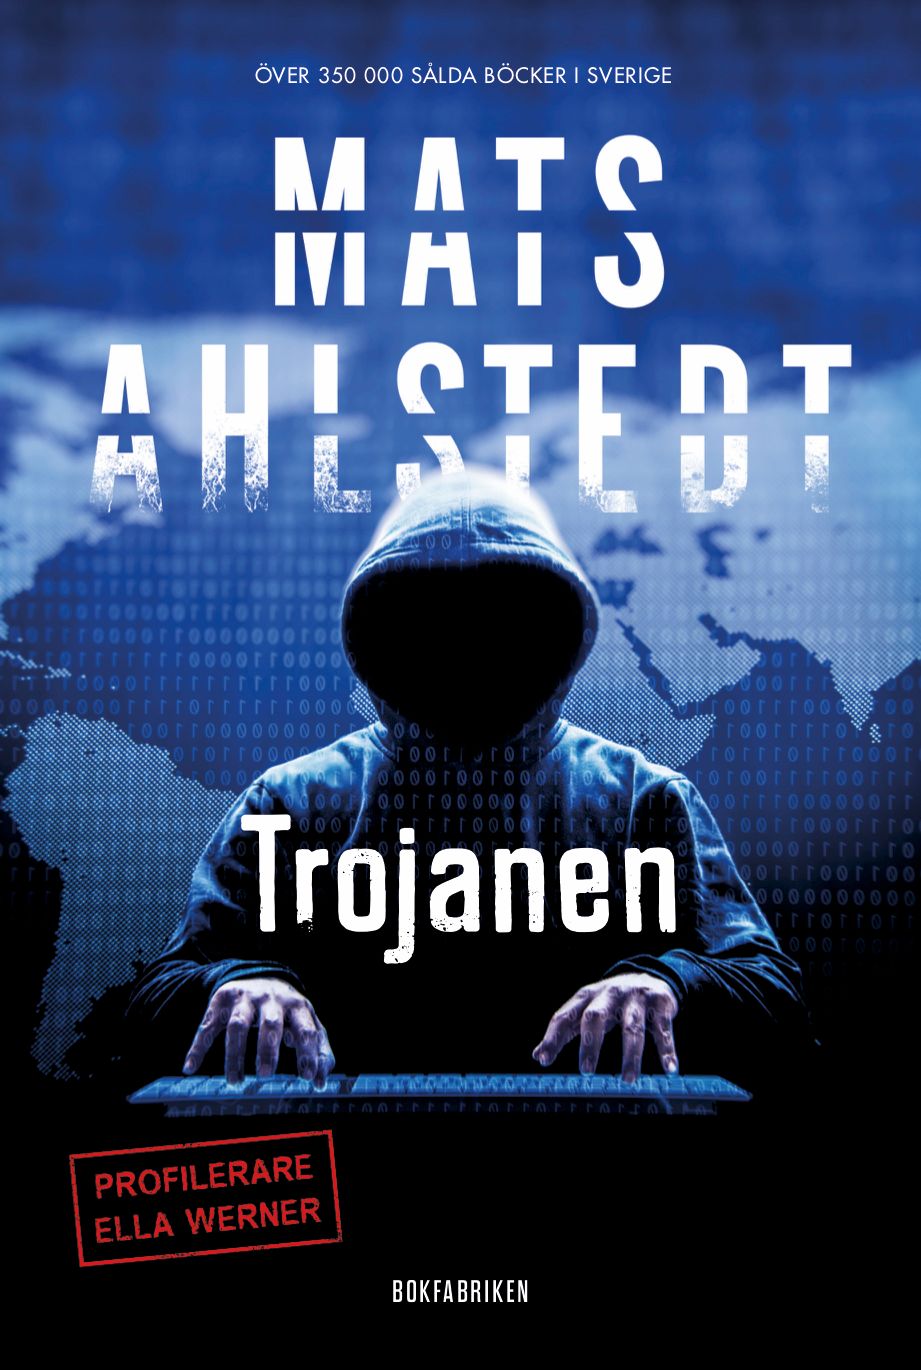 Trojanen, e-bog af Mats Ahlstedt